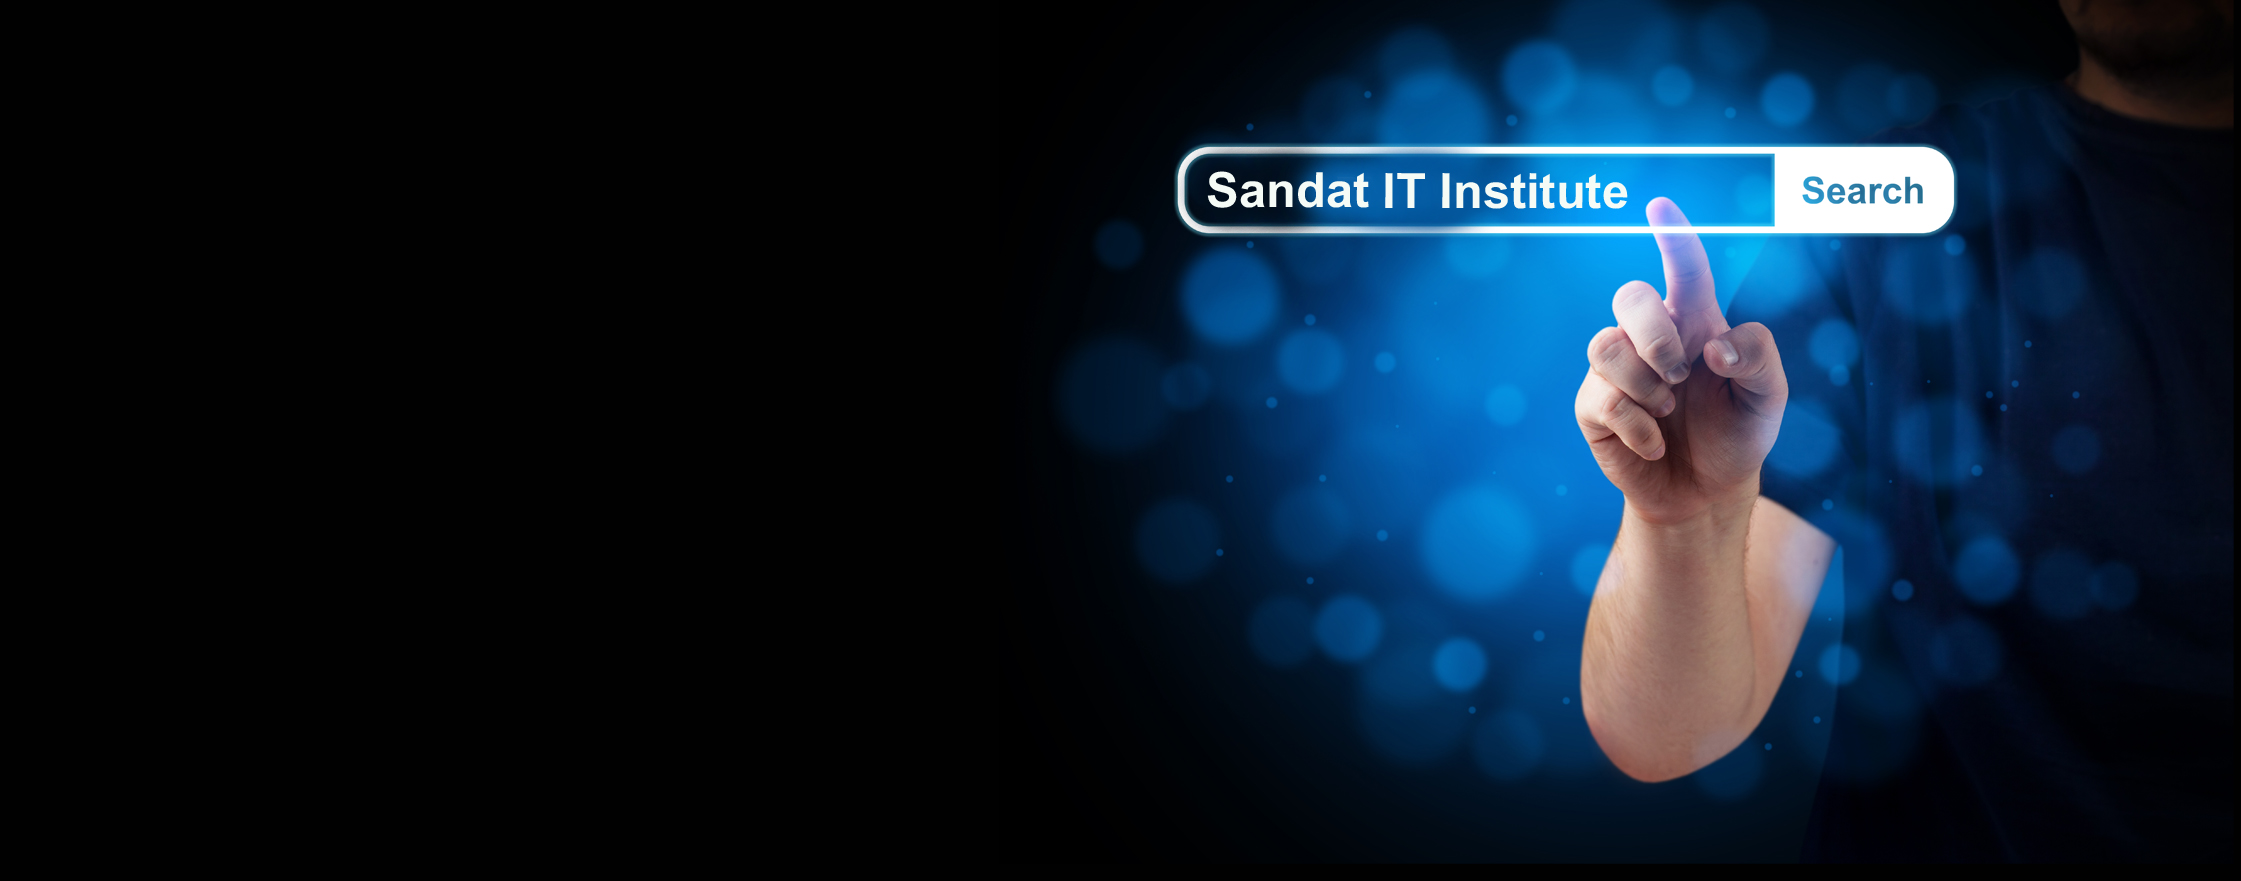 Sandat IT Institute